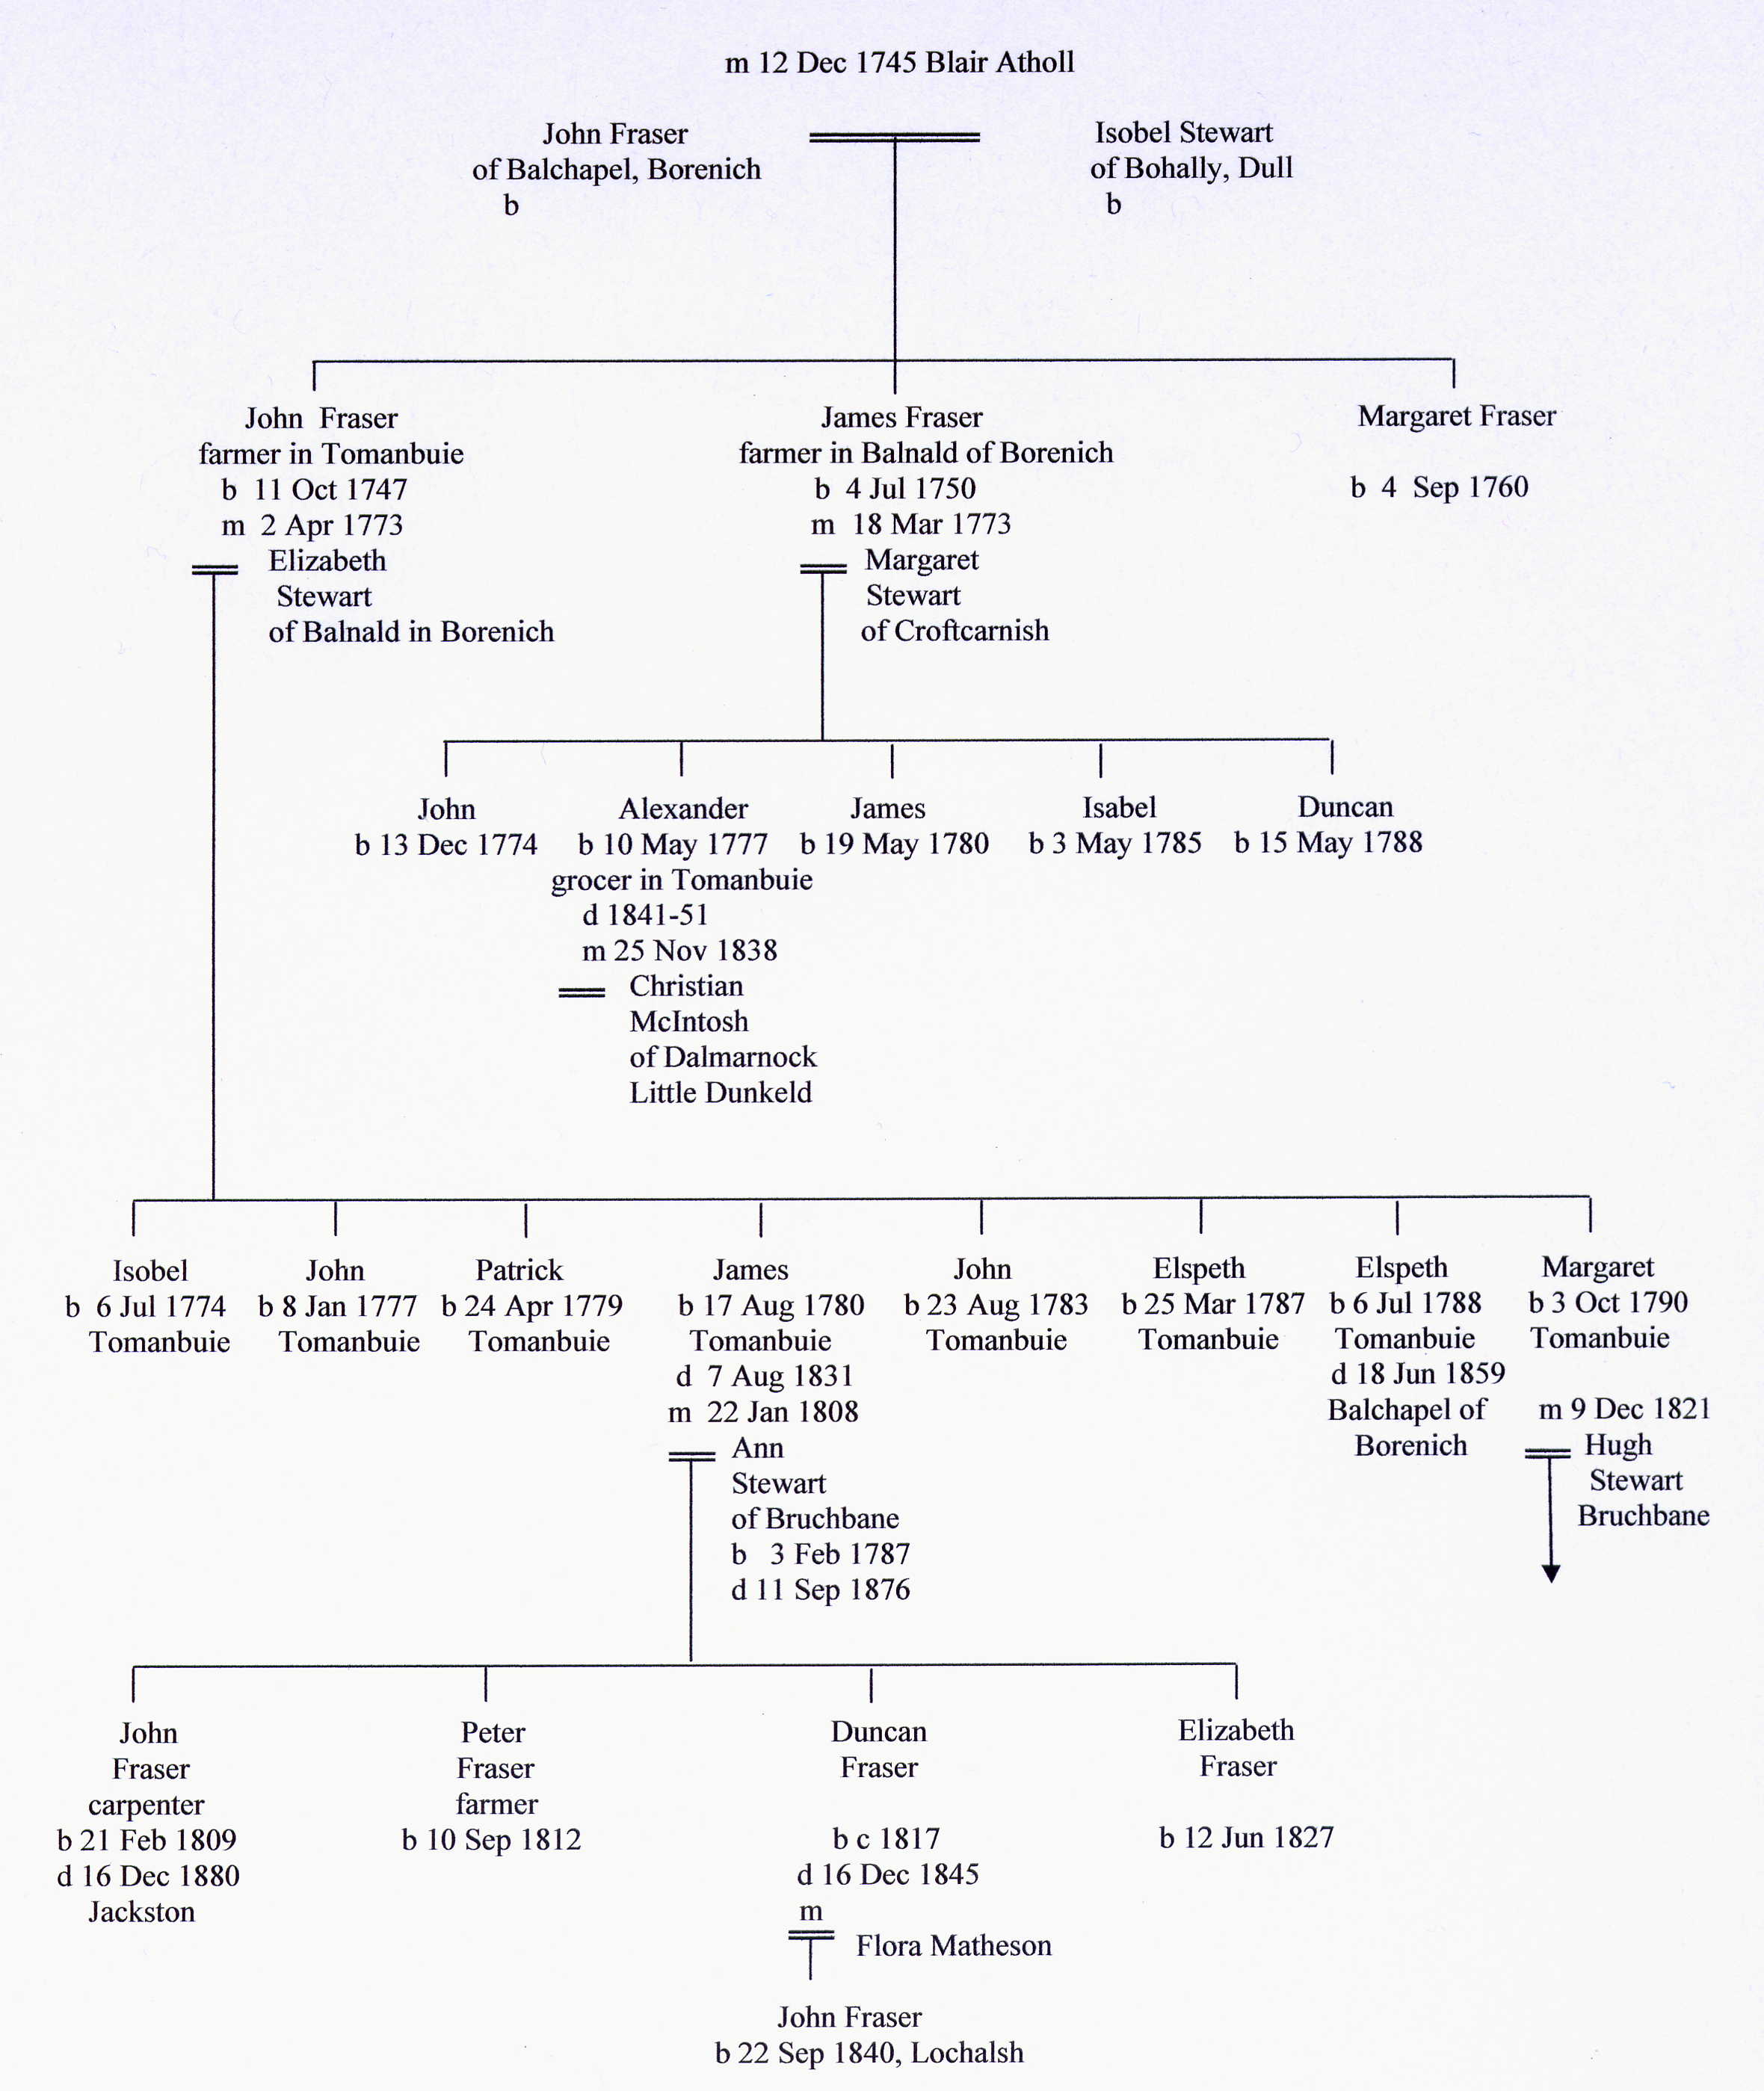 Fraser family tree